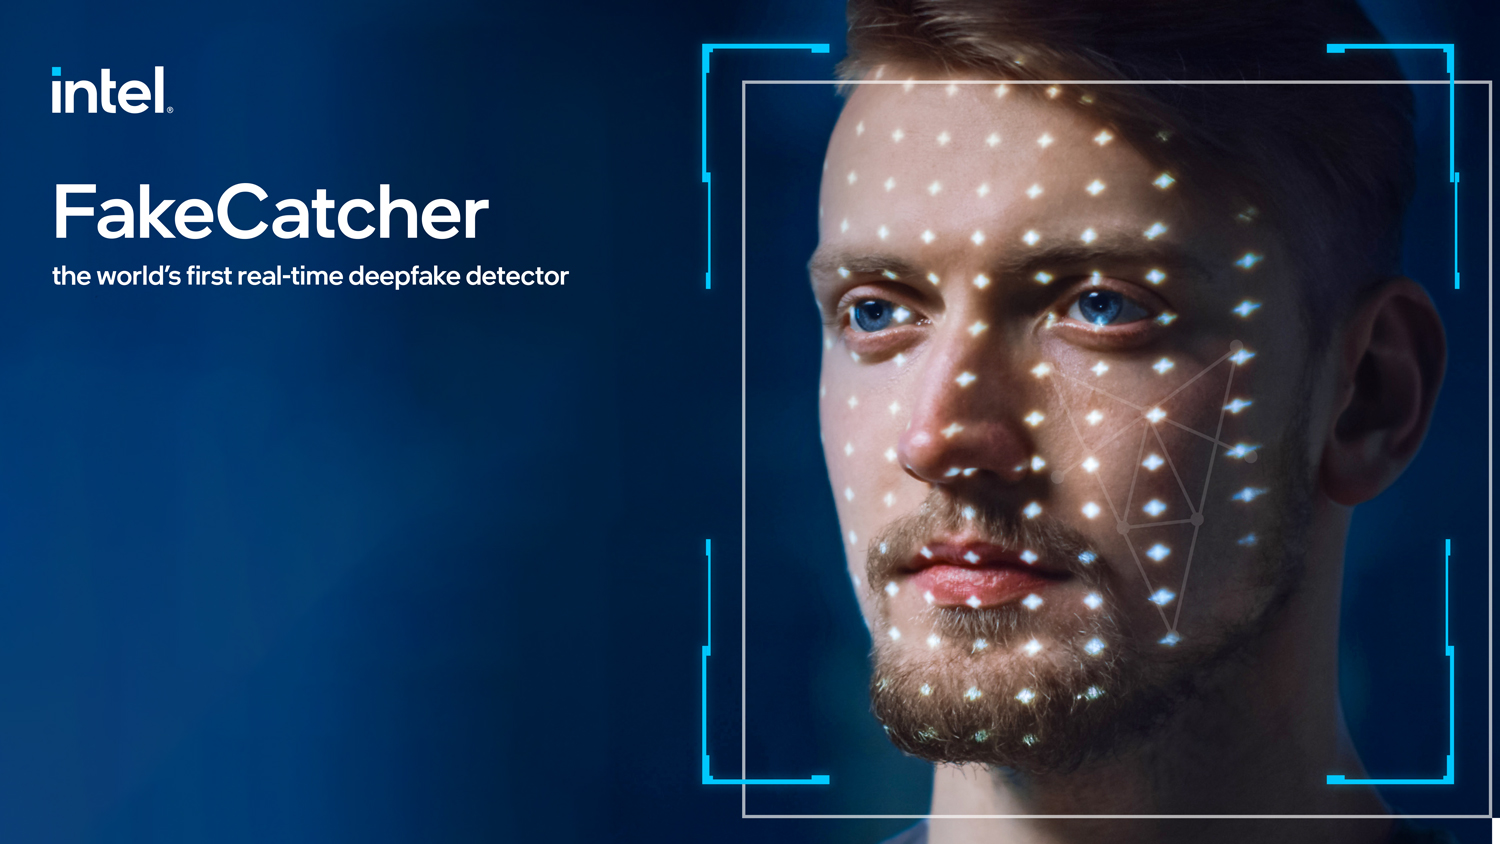 Intel FakeCatcher Mampu Mengesan Video Deepfake Dengan Ketepatan 96%